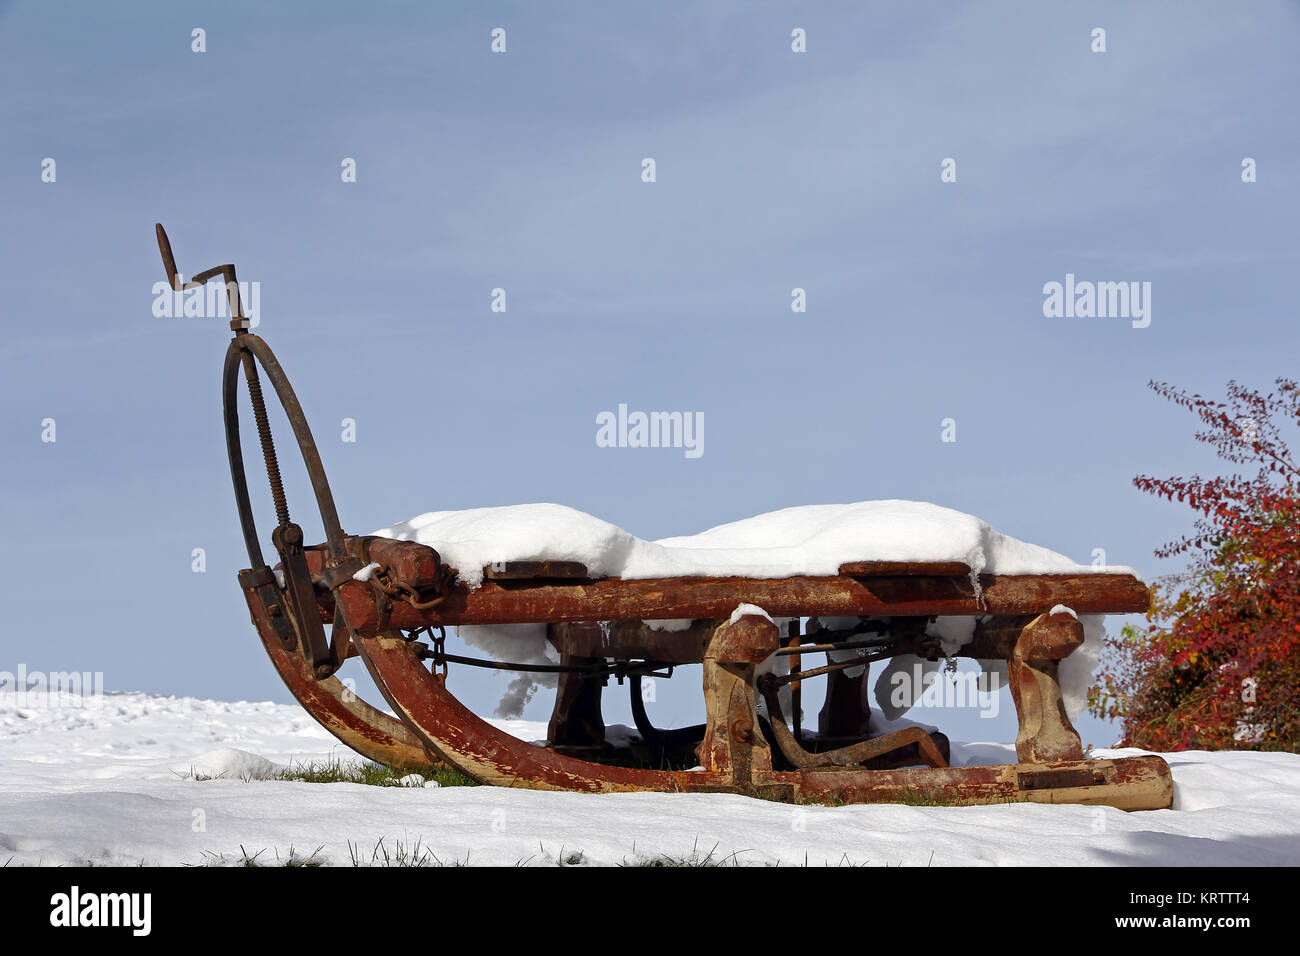 Ein alter Schlitten im Winter. Alter Transportwagen im Schnee  Stockfotografie - Alamy